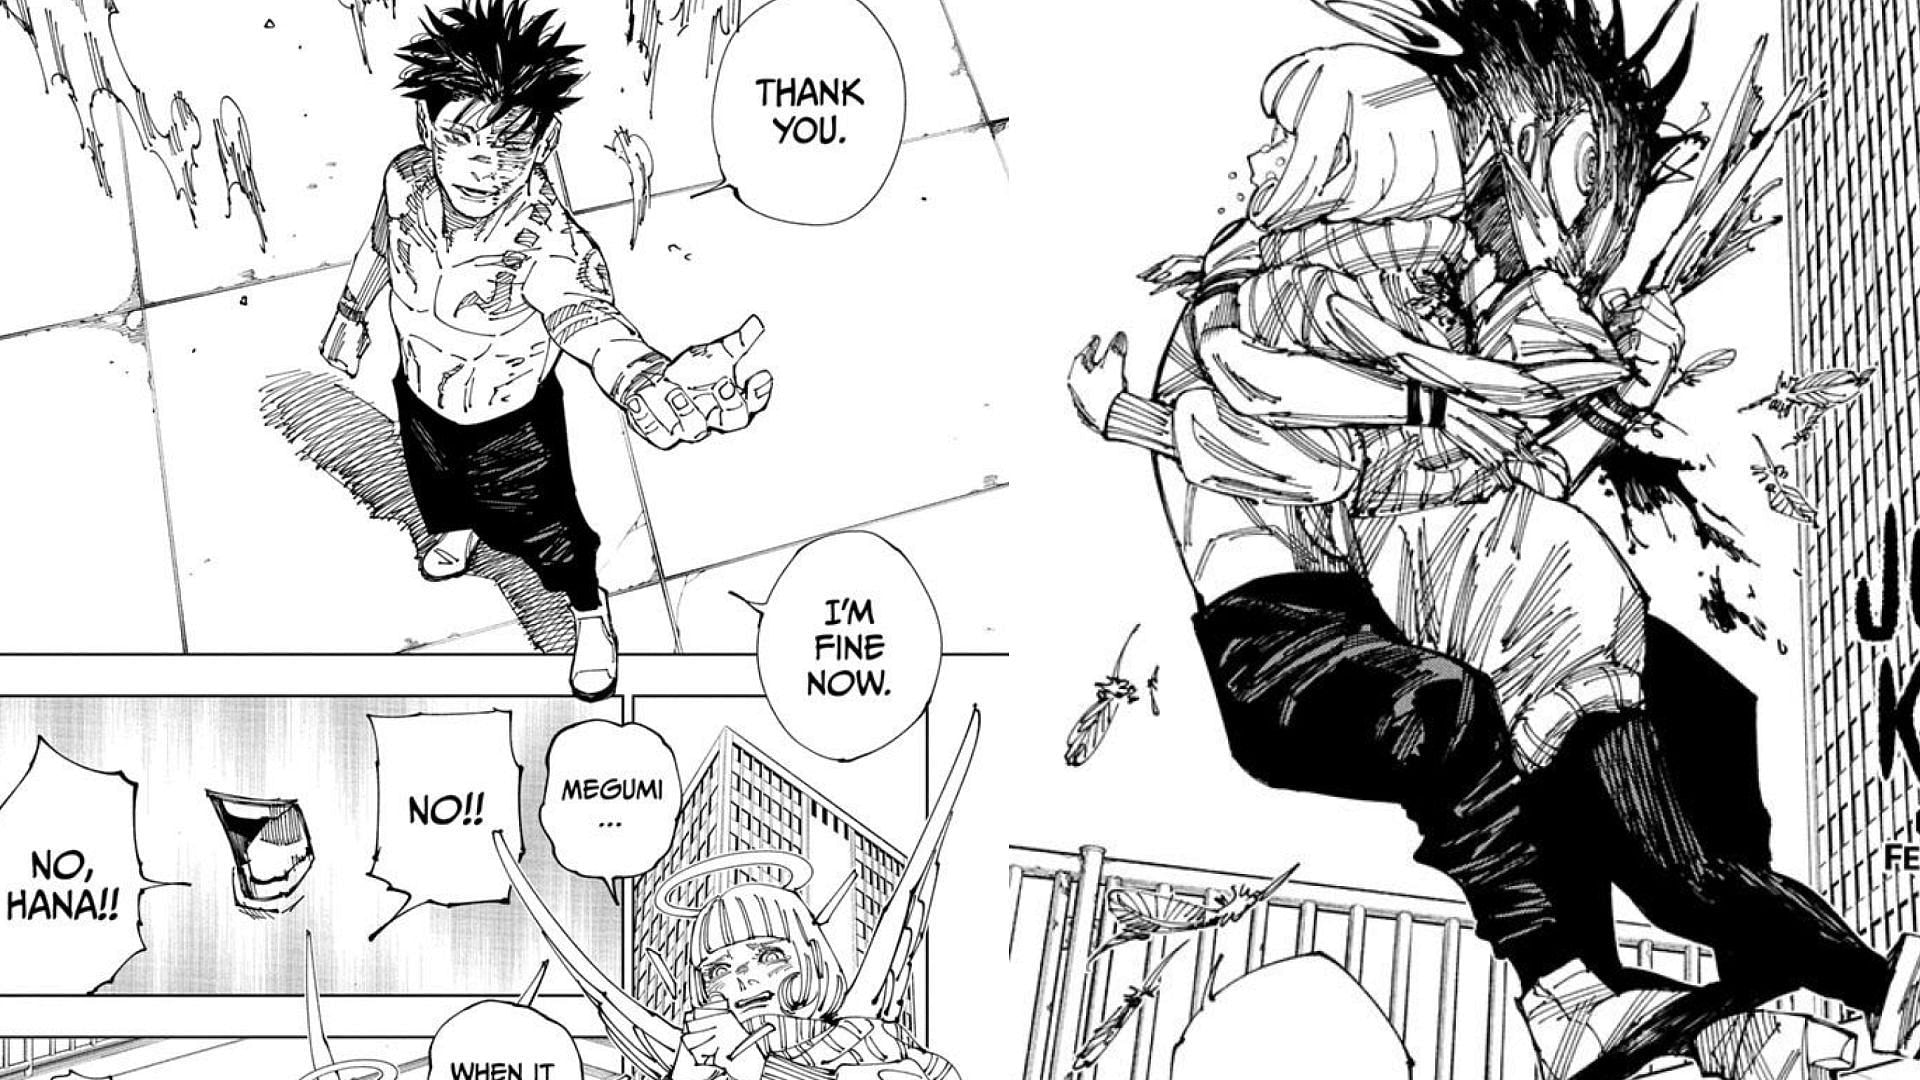 Sukuna attacking Angel in Jujutsu Kaisen manga (Image via Akutami Gege/Shueisha)